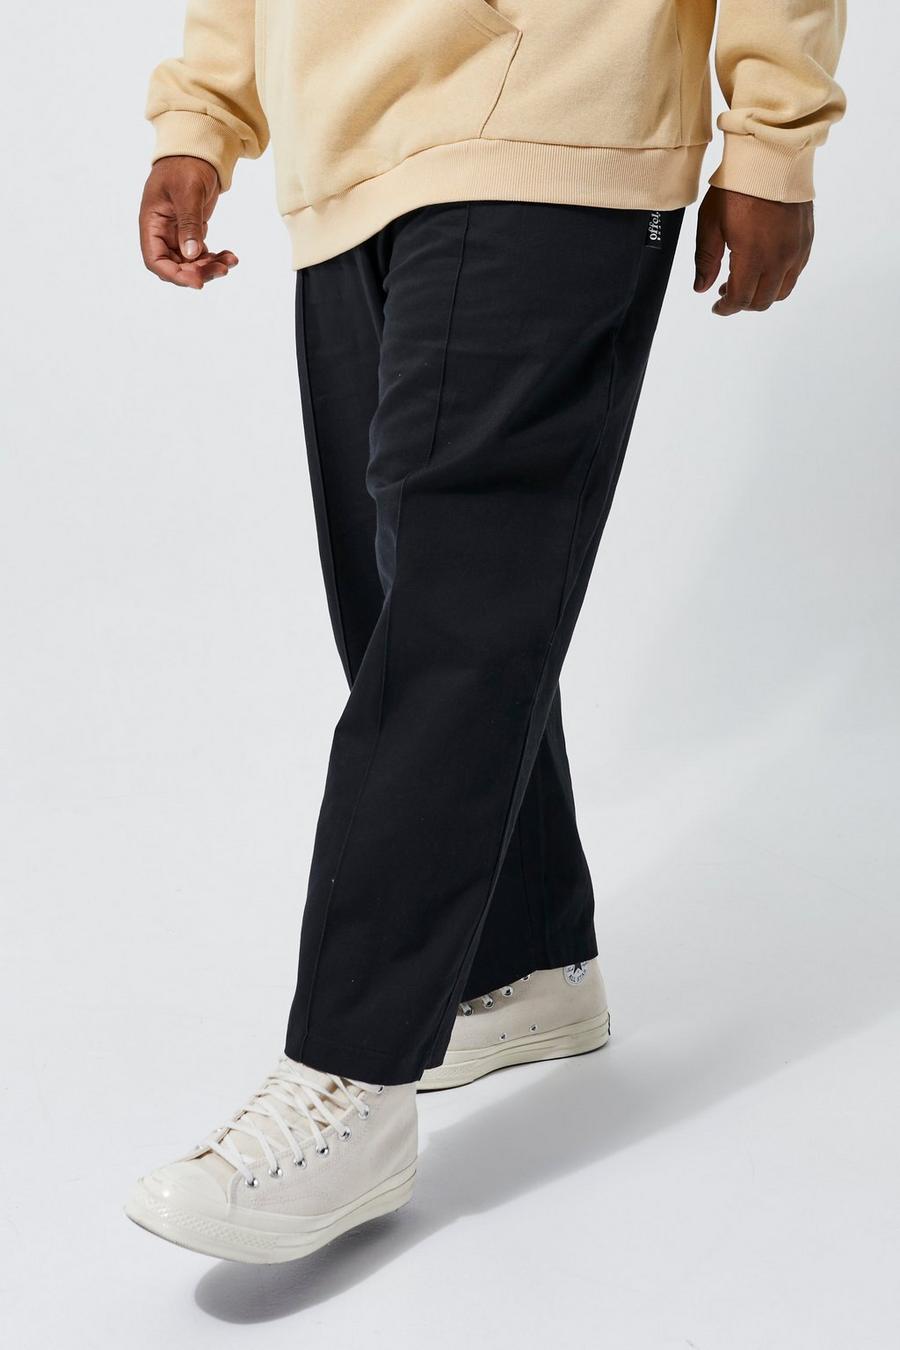 שחור nero מכנסי צ'ינו סקייטר קרופ עם רצועת מותניים אלסטית, מידות גדולות 